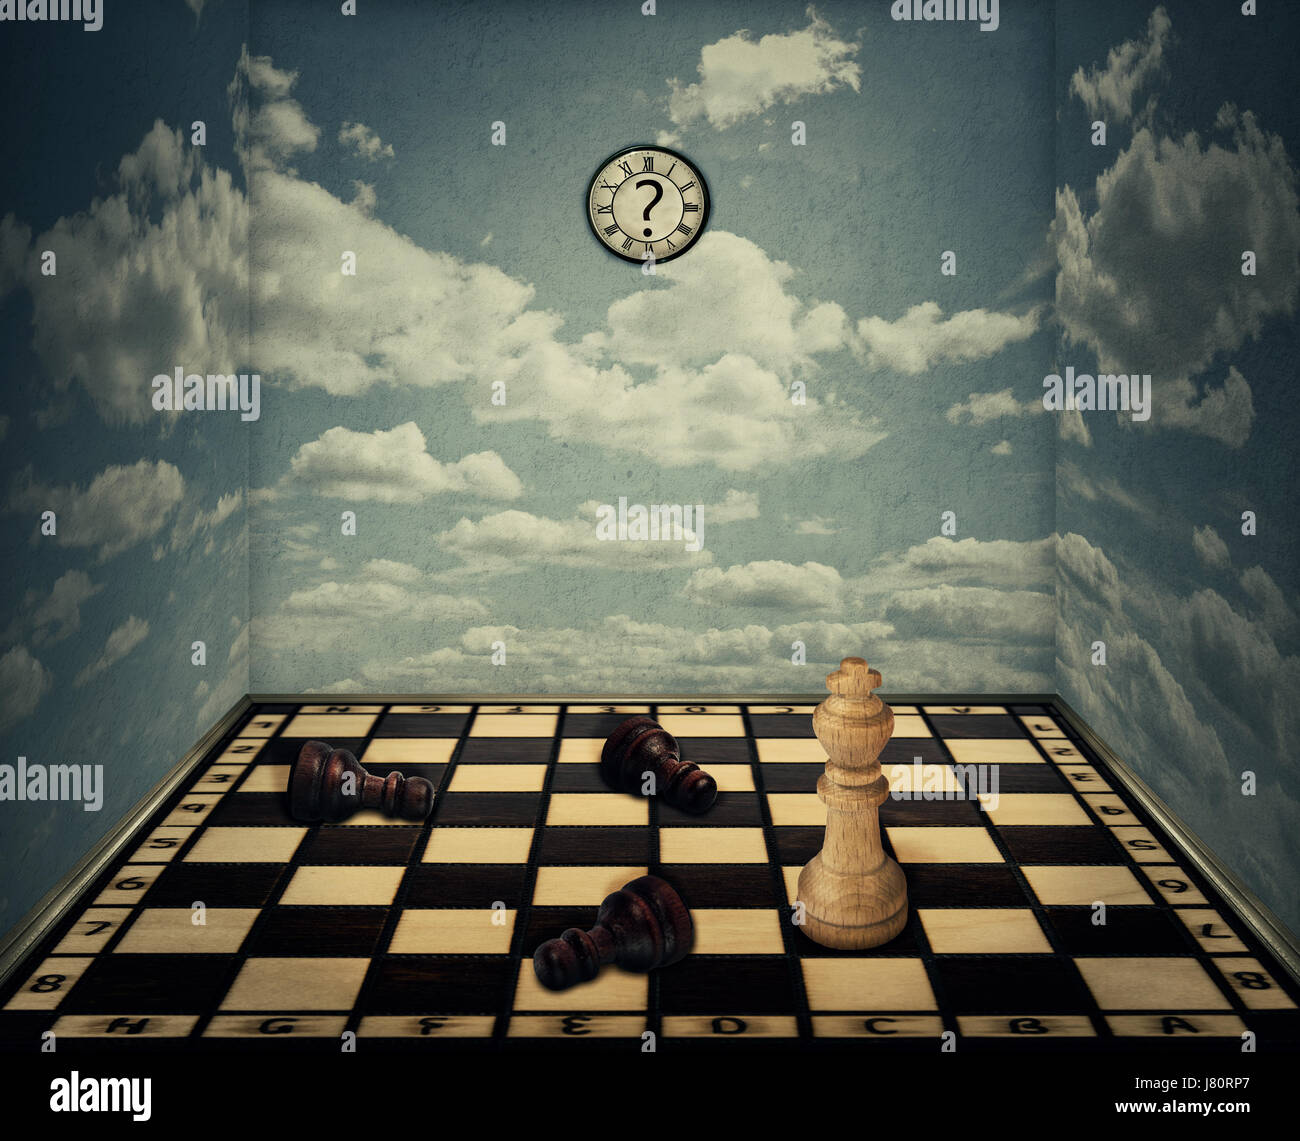 Idea de negocio como un espacio mágico con un tablero de ajedrez baja rodeado por las paredes con textura de nubes como las limitaciones y el rey pedazo ganando en la parte frontal Foto de stock